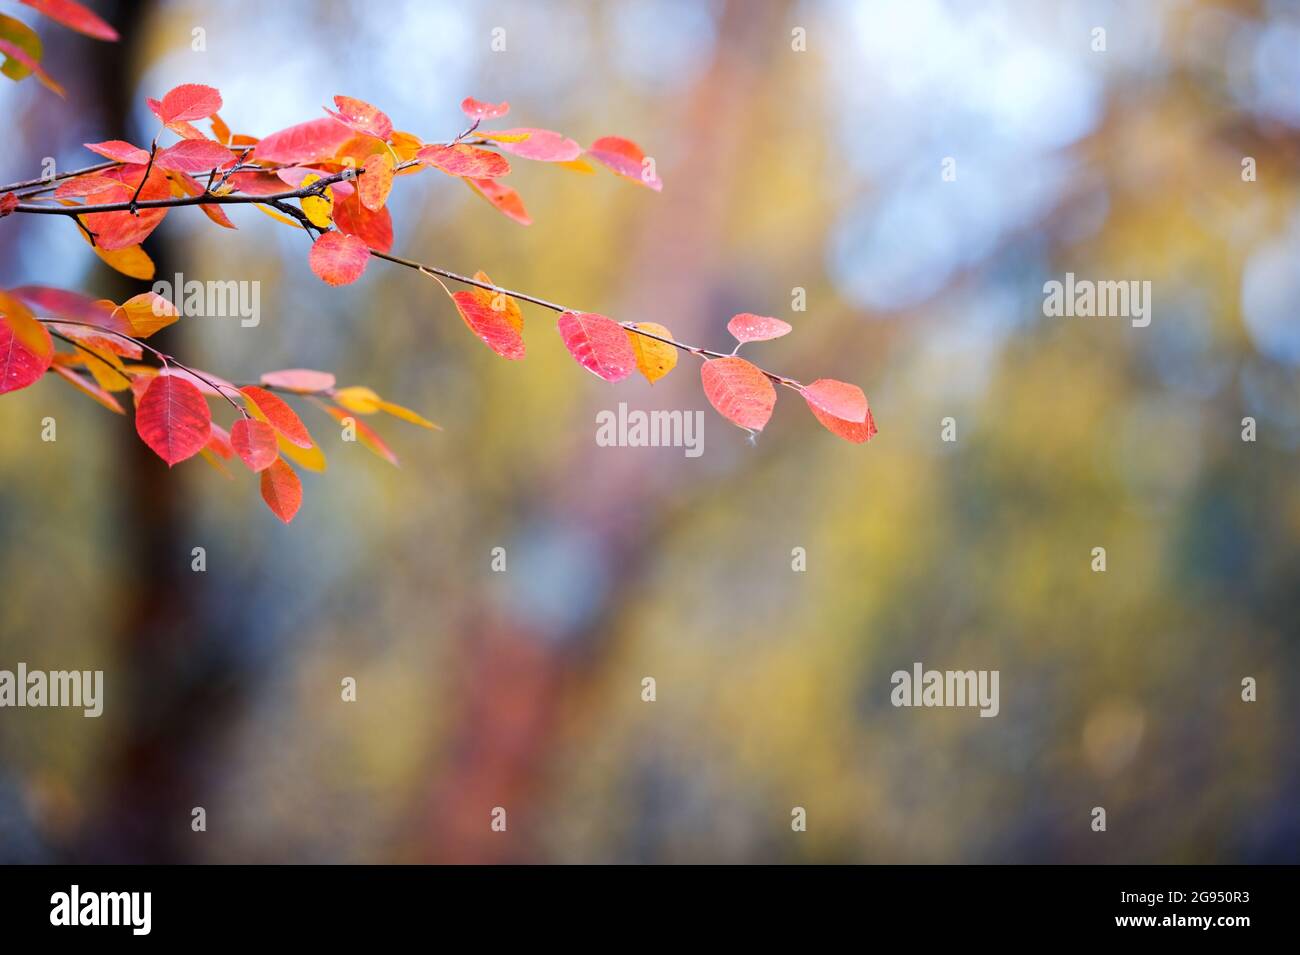 Branche de Saskatoon (Amelanchier alnifolia) avec des feuilles d'automne colorées sur fond défoqué. Mise au point sélective et faible profondeur de champ. Banque D'Images